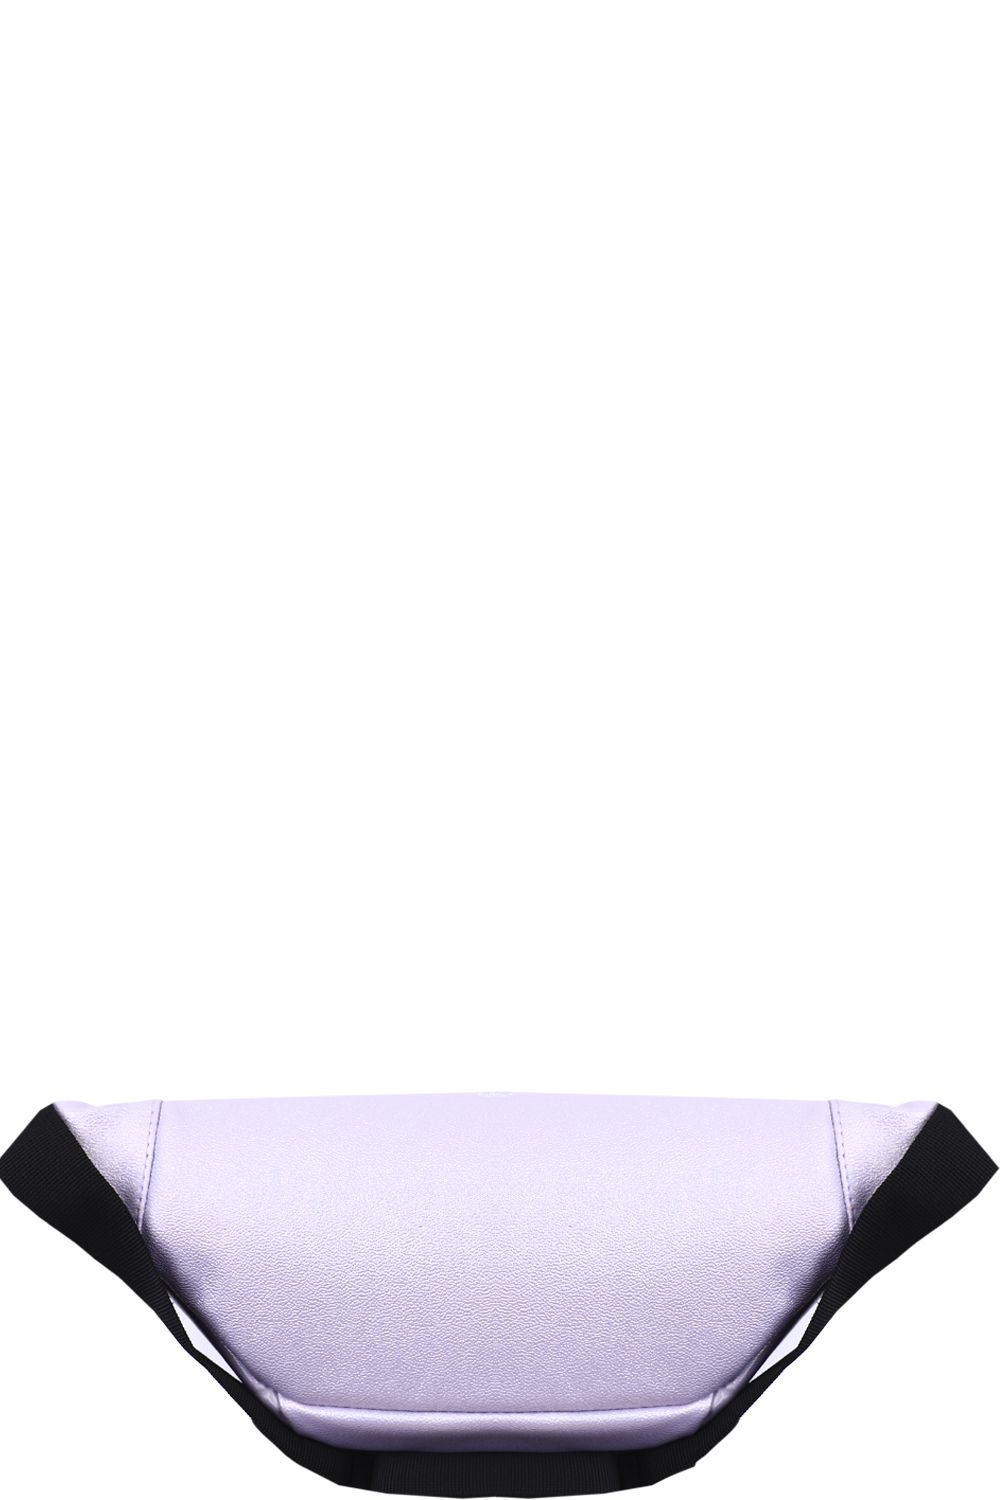 Сумка BagRio, размер UNI, цвет фиолетовый up6/20-lilac - фото 3